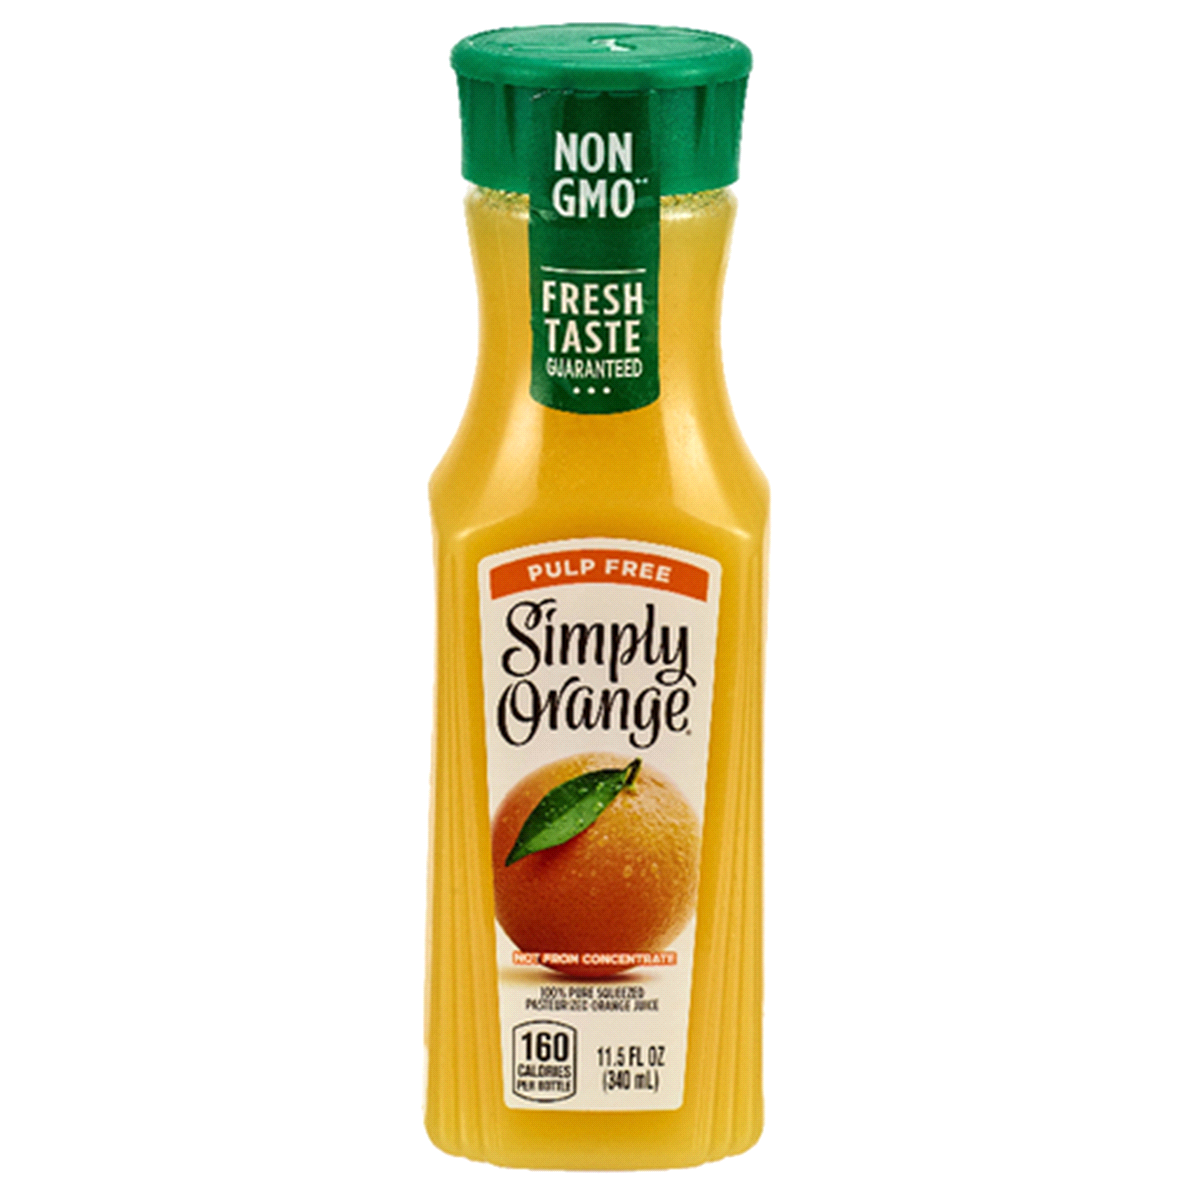 Beverage / Juice / Simply Orange Juice Pulp-Free, 11.5 oz